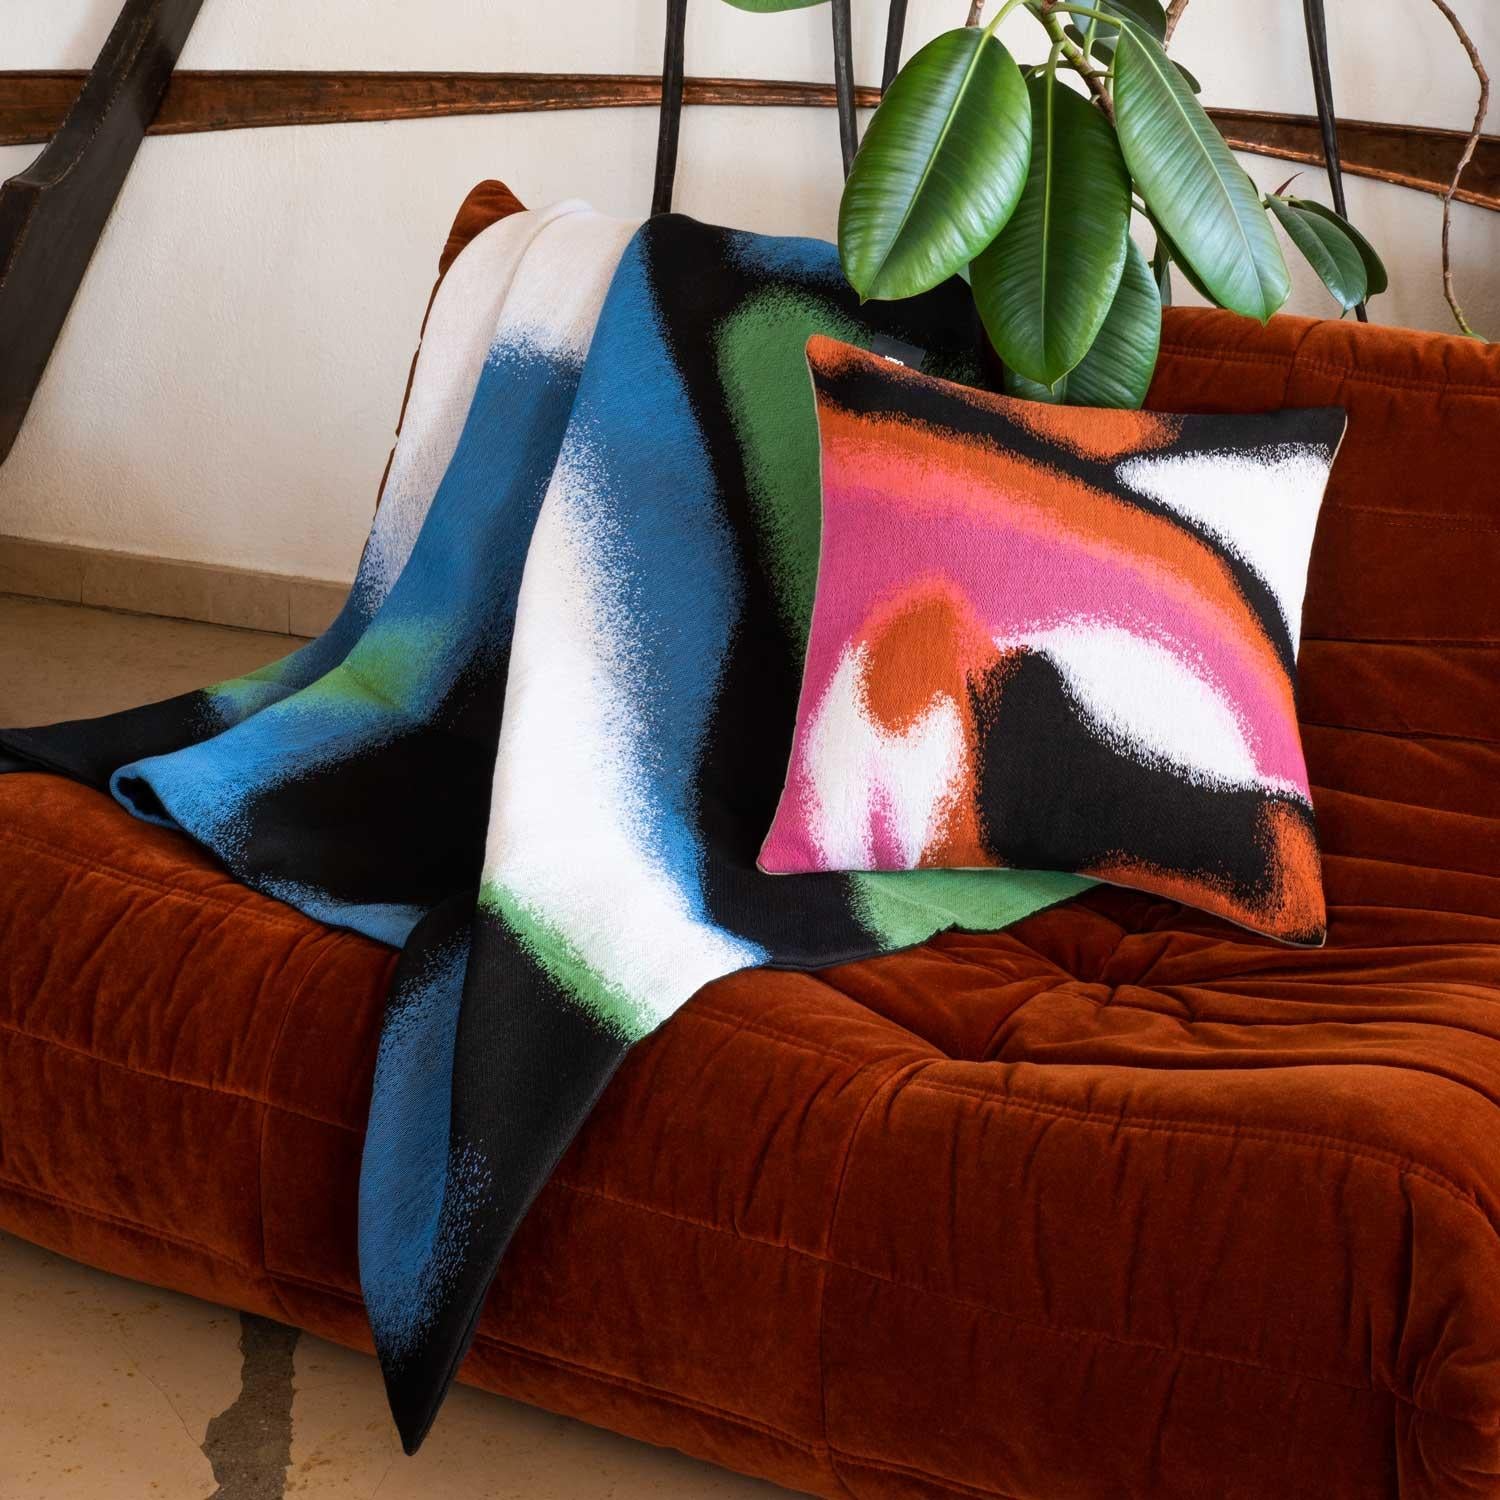 Unsere Gobelin-Decken verwandeln Textilien in Kunst.  Dieser in Frankreich hergestellte, sorgfältig gefertigte dreilagige Jacquard wird fachmännisch von Hand verarbeitet, um einen subtilen dreidimensionalen Effekt zu erzielen. Das abstrakte,